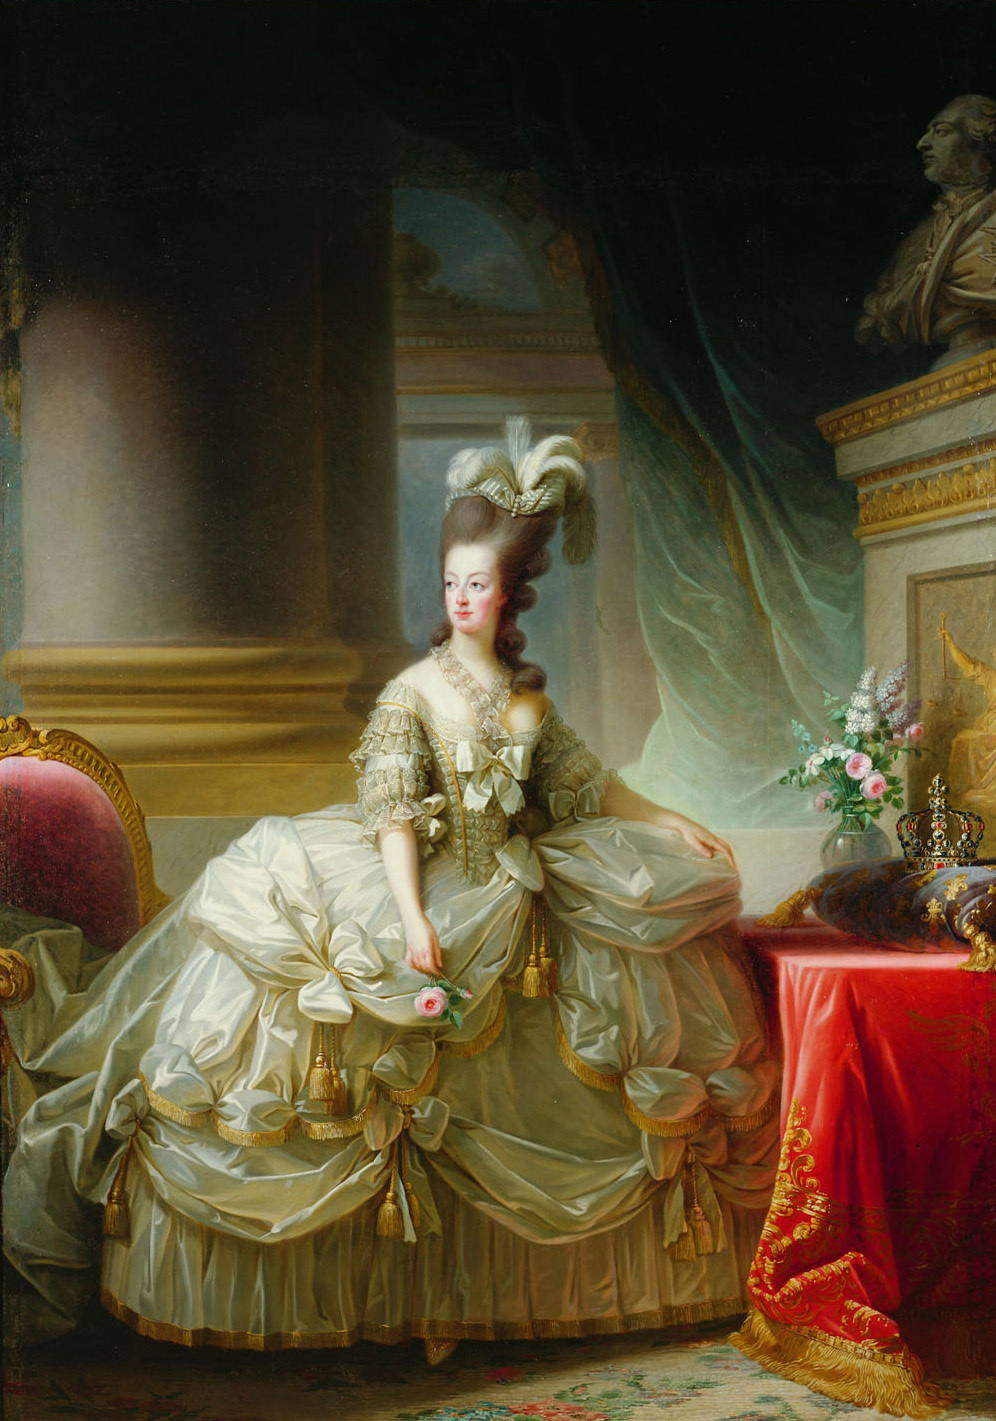 フランス王妃、旧オーストリア皇女マリー・アントワネット by Élisabeth Vigee Le Brun - 1778年 - 273 x 193,5 cm 